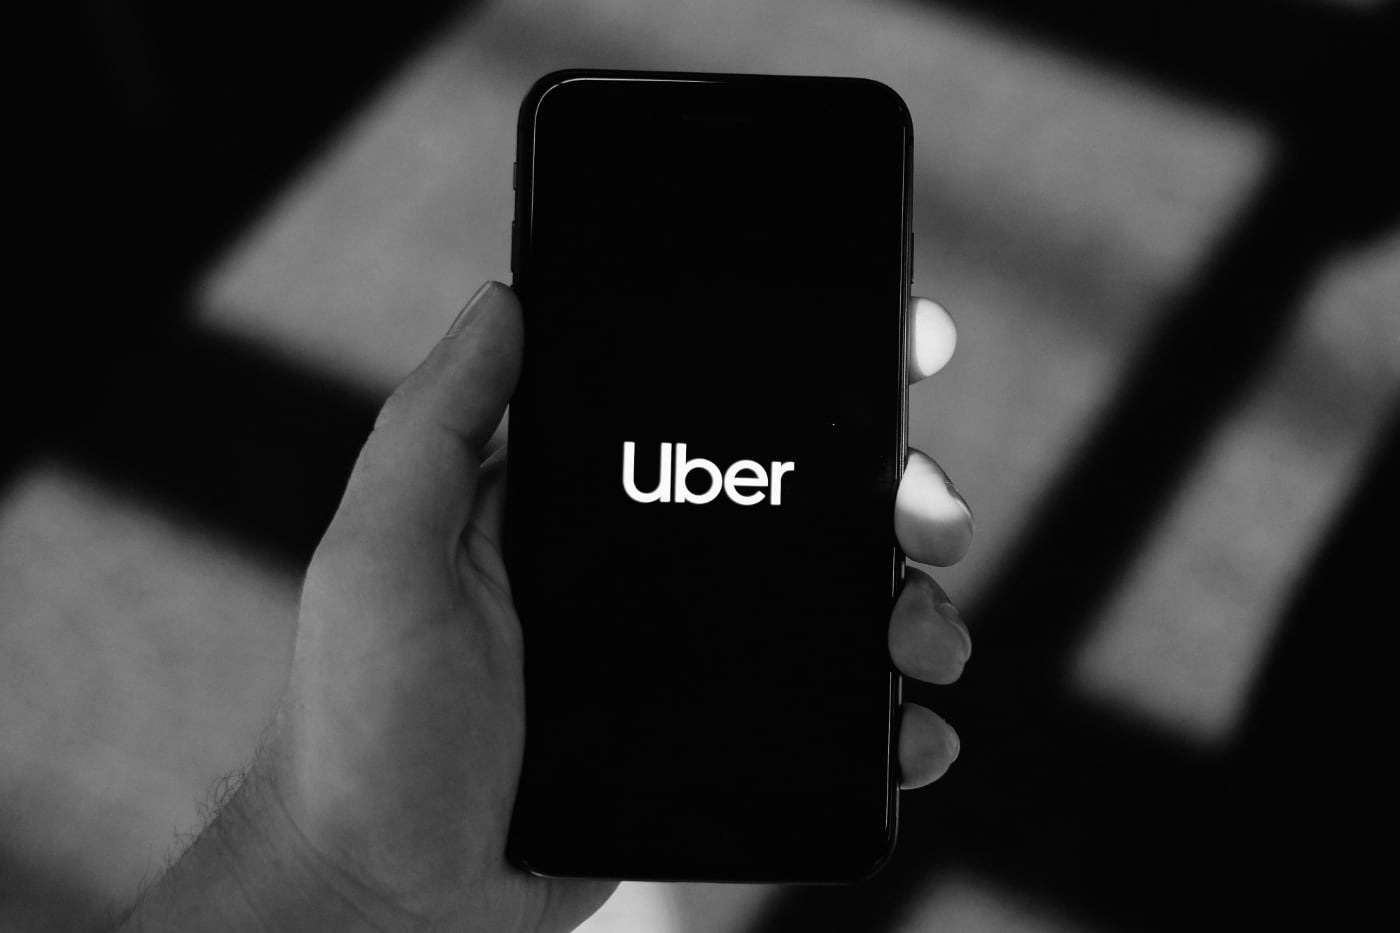 Uber заплатит по $1000 каждому, кто откажется от поездки на автомобиле на 5 недель. Яндекс, твой ход